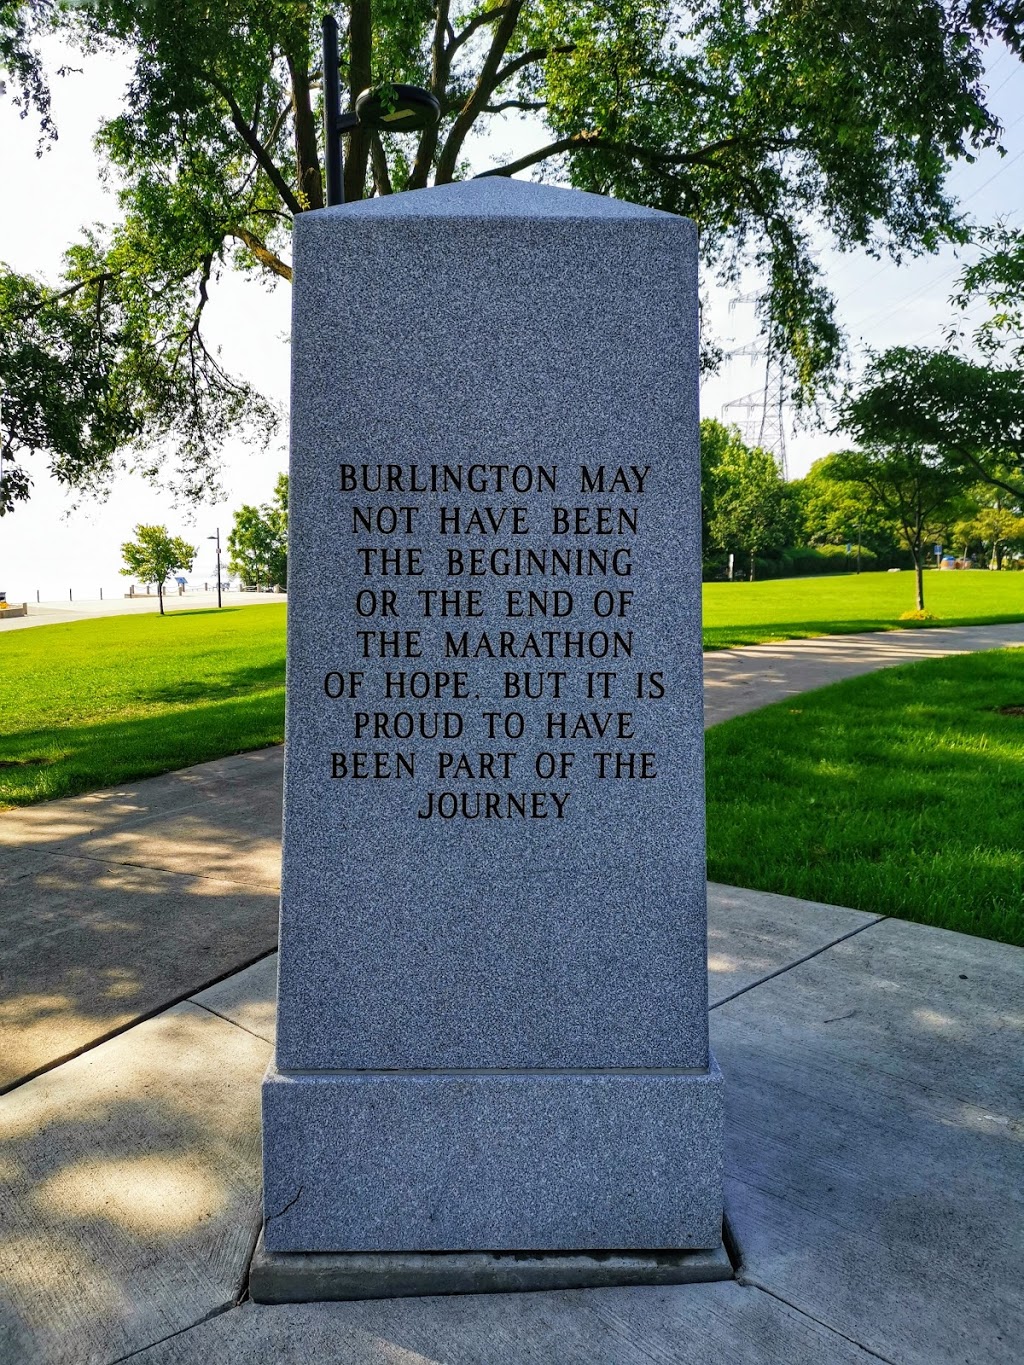 Terry Fox Memorial | 1286 Lakeshore Rd, Burlington, ON L7S 1Y2, Canada